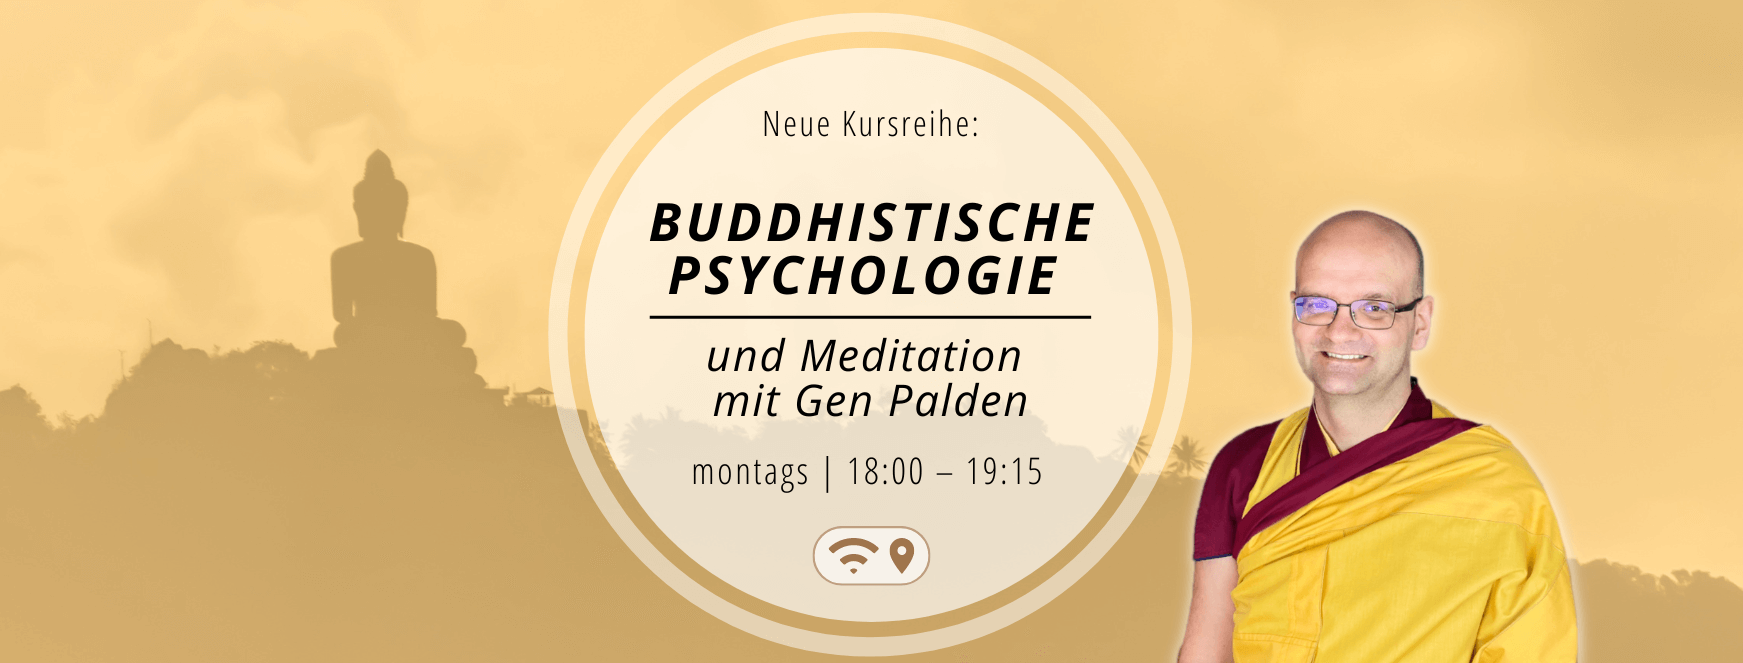 Buddhistische Psychologie und Meditation